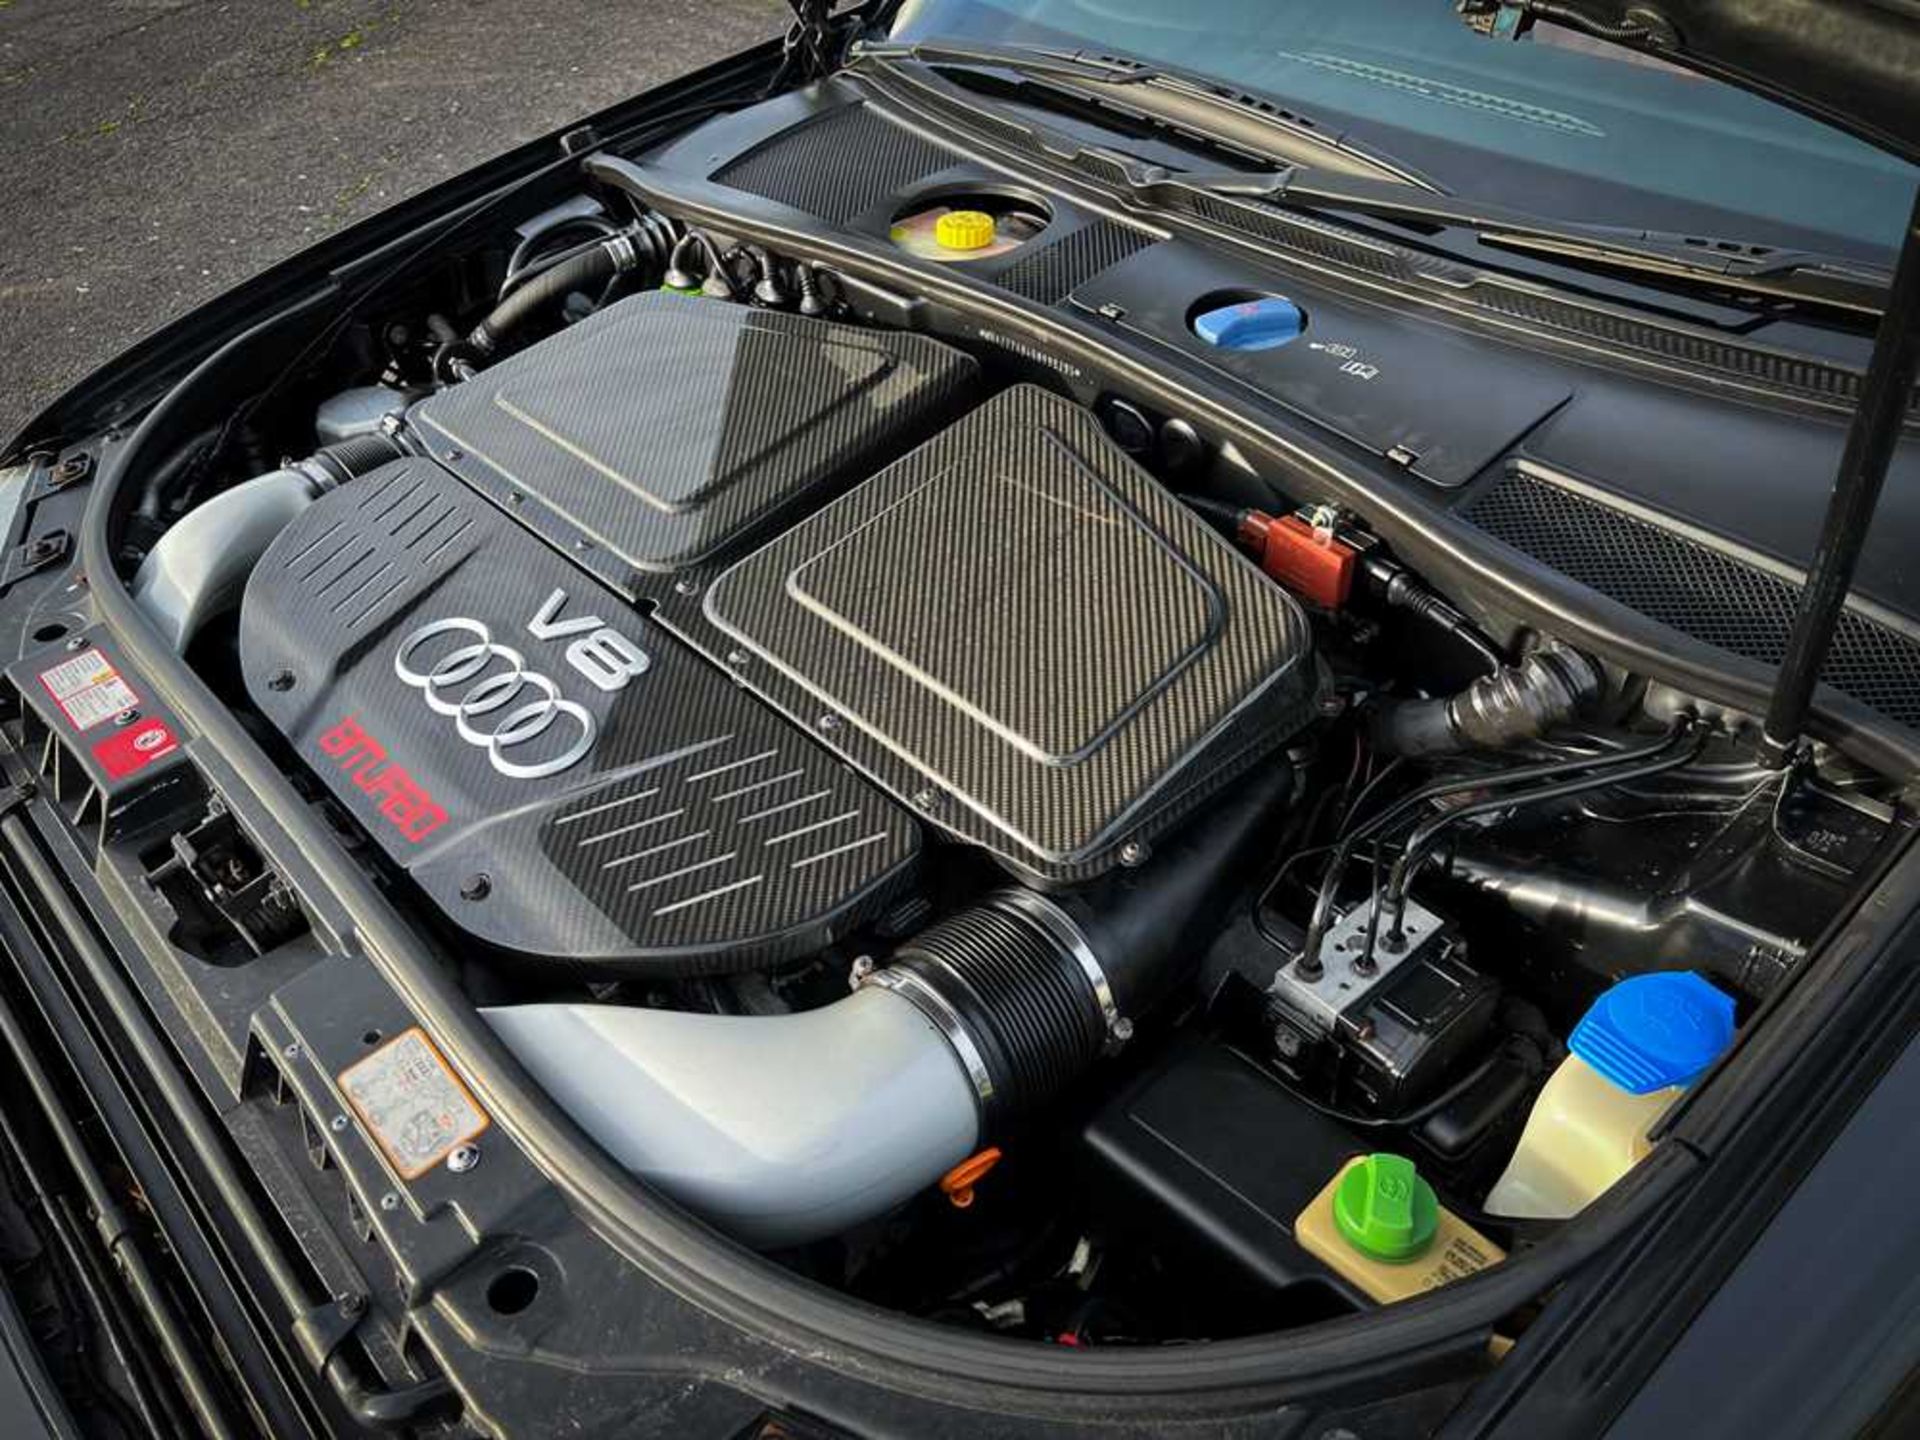 2004 Audi RS6 Quattro Plus No. 295 of just 999 European RS6 'Plus' models - Image 51 of 62